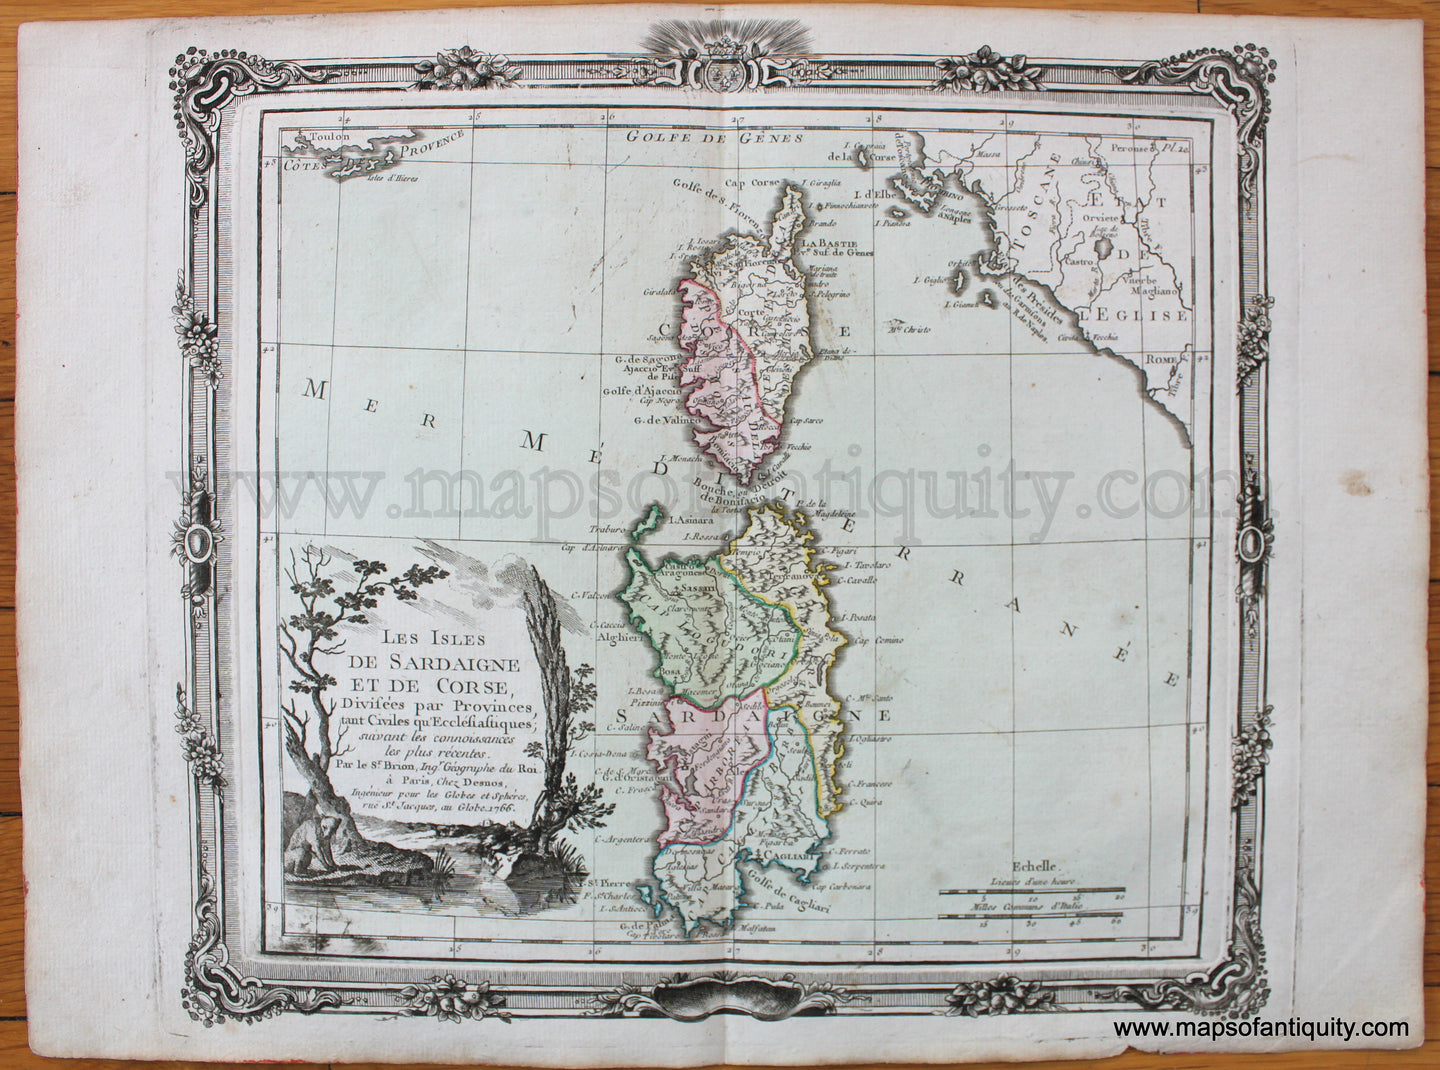 Antique-Hand-Colored-Map-Les-Isles-de-Sardaigne-et-de-CorseDivisees-par-Provinces-1766-Brion-de-la-Tour-1700s-18th-century-Maps-of-Antiquity